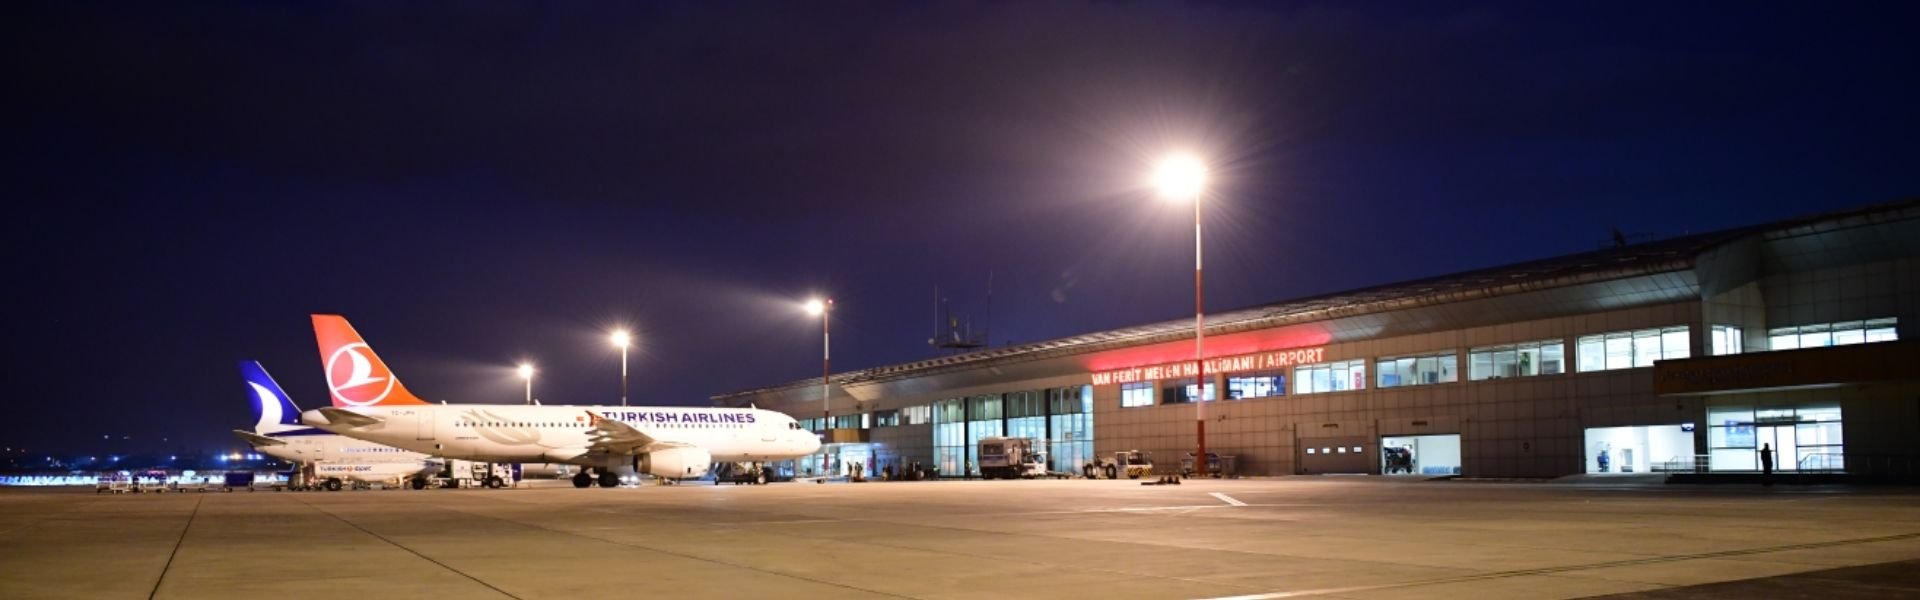 Van Ferit Melen Havalimanı